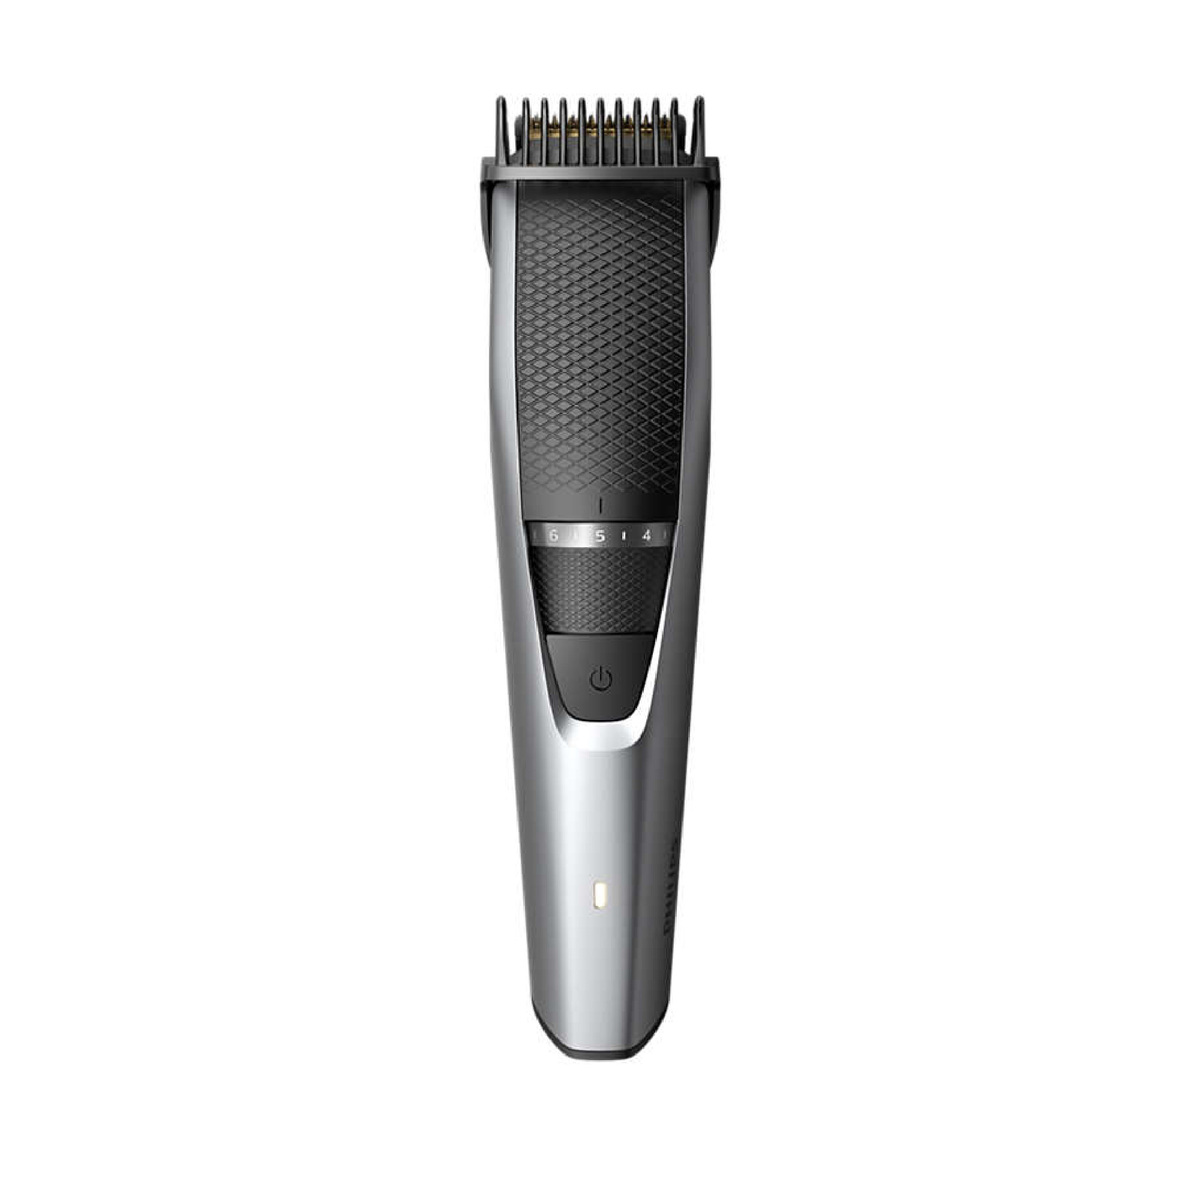 Philips Beard trimmer BT3222/13